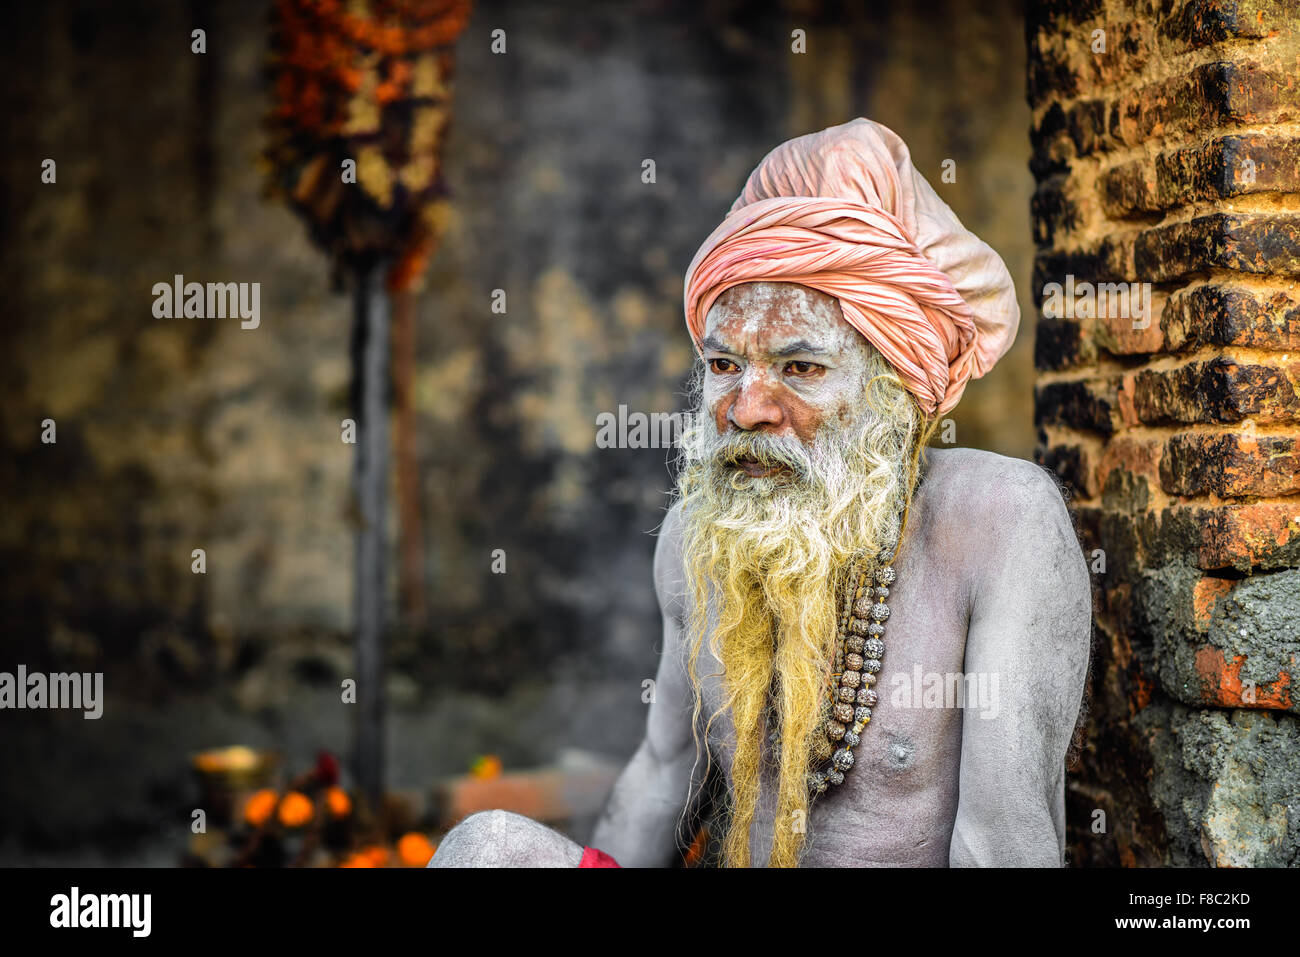 Ritratto di Shaiva sadhu (uomo santo) con tradizionale barba lunga nel tempio di Pashupatinath Foto Stock